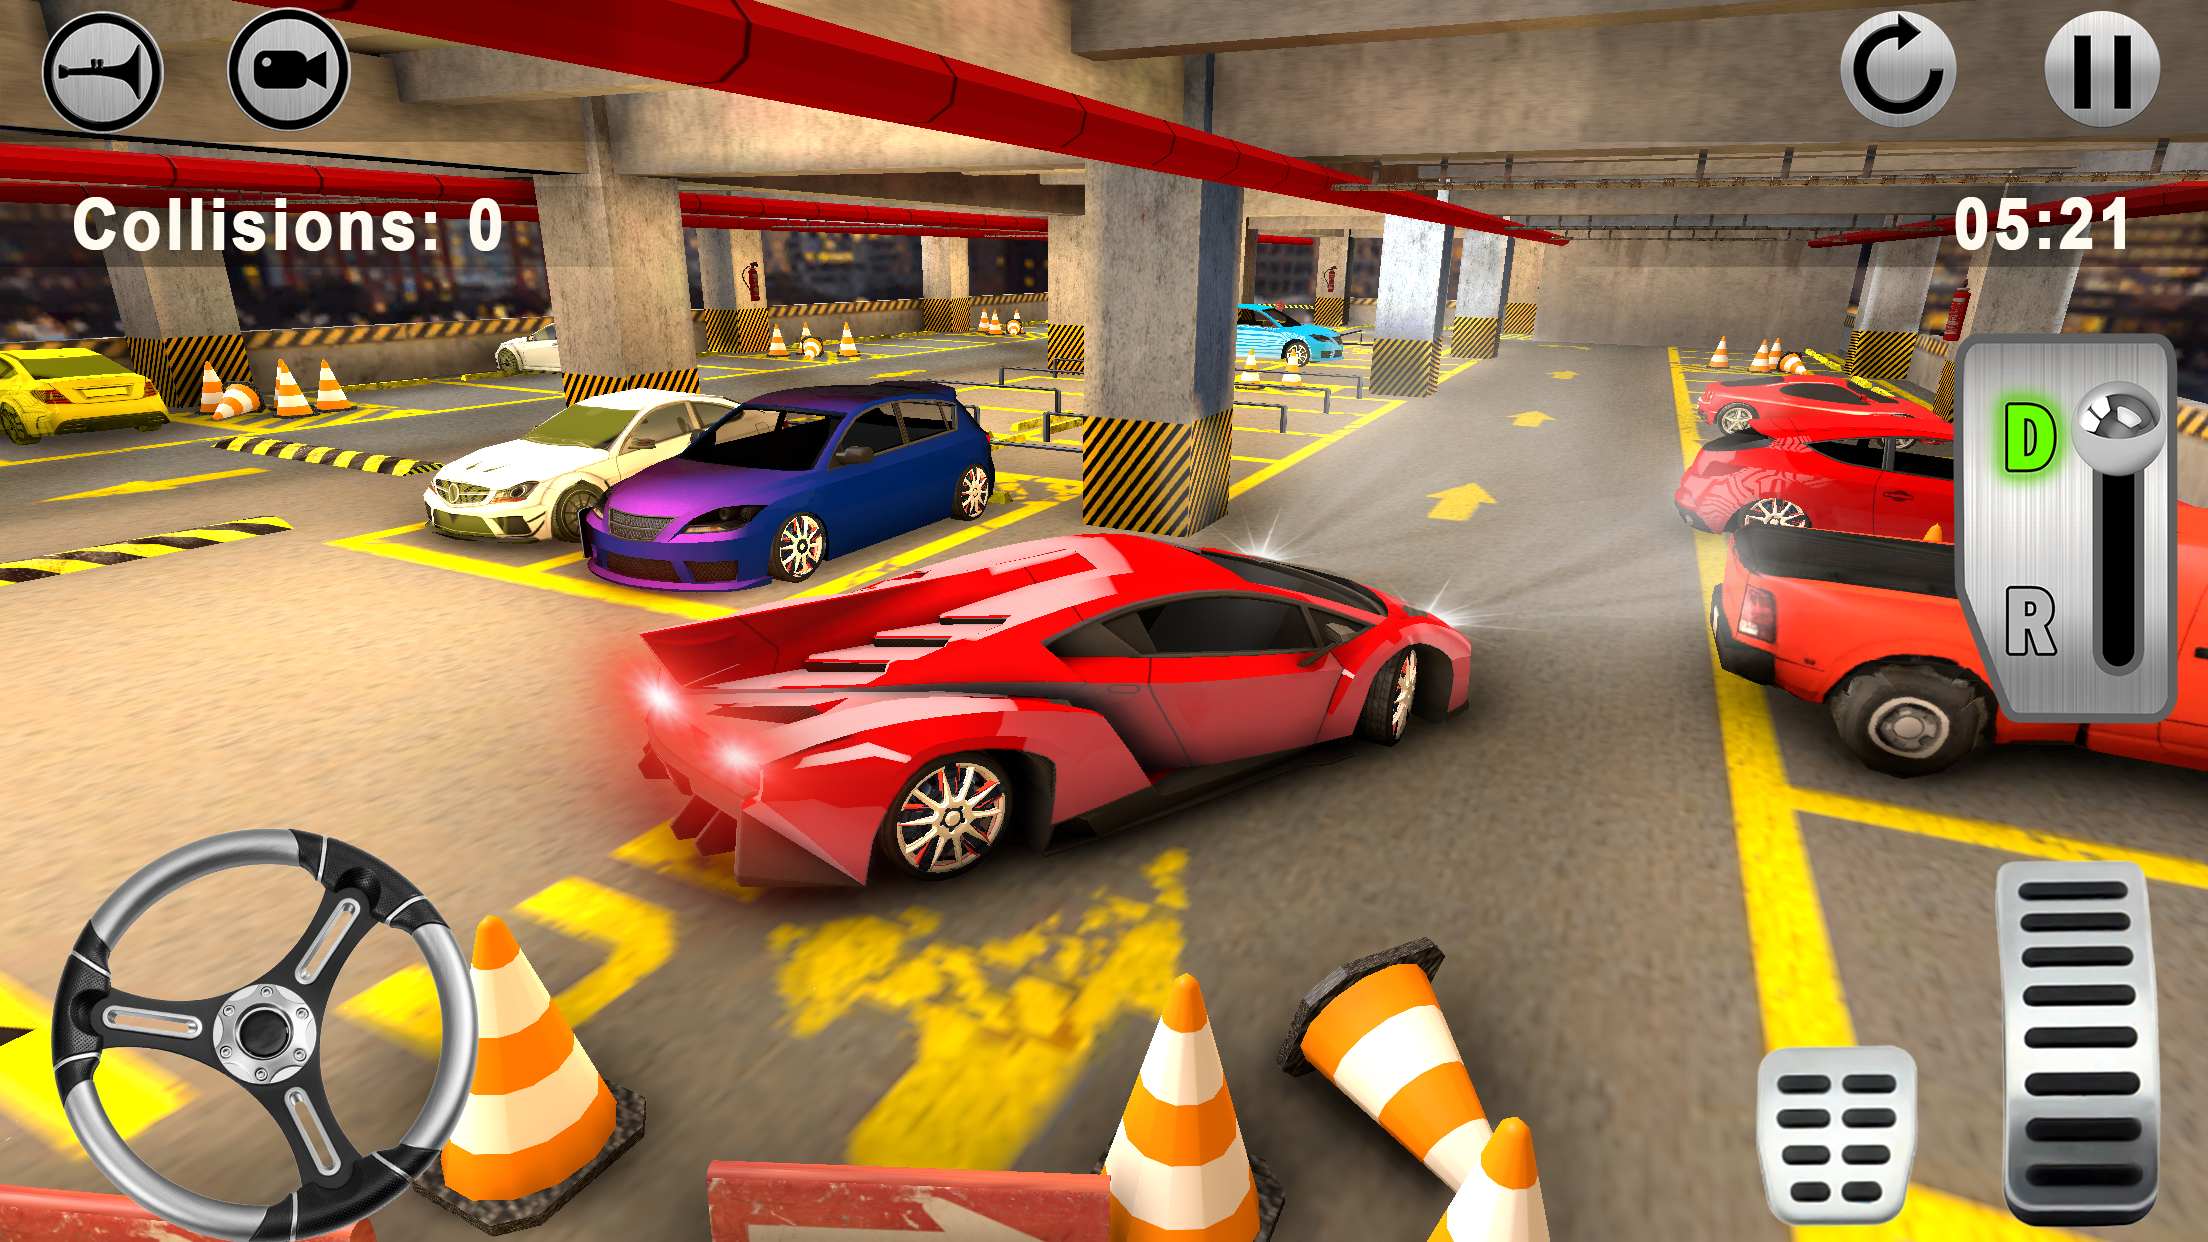 Screenshot 1 of Парковка автомобилей - игра-симулятор 1